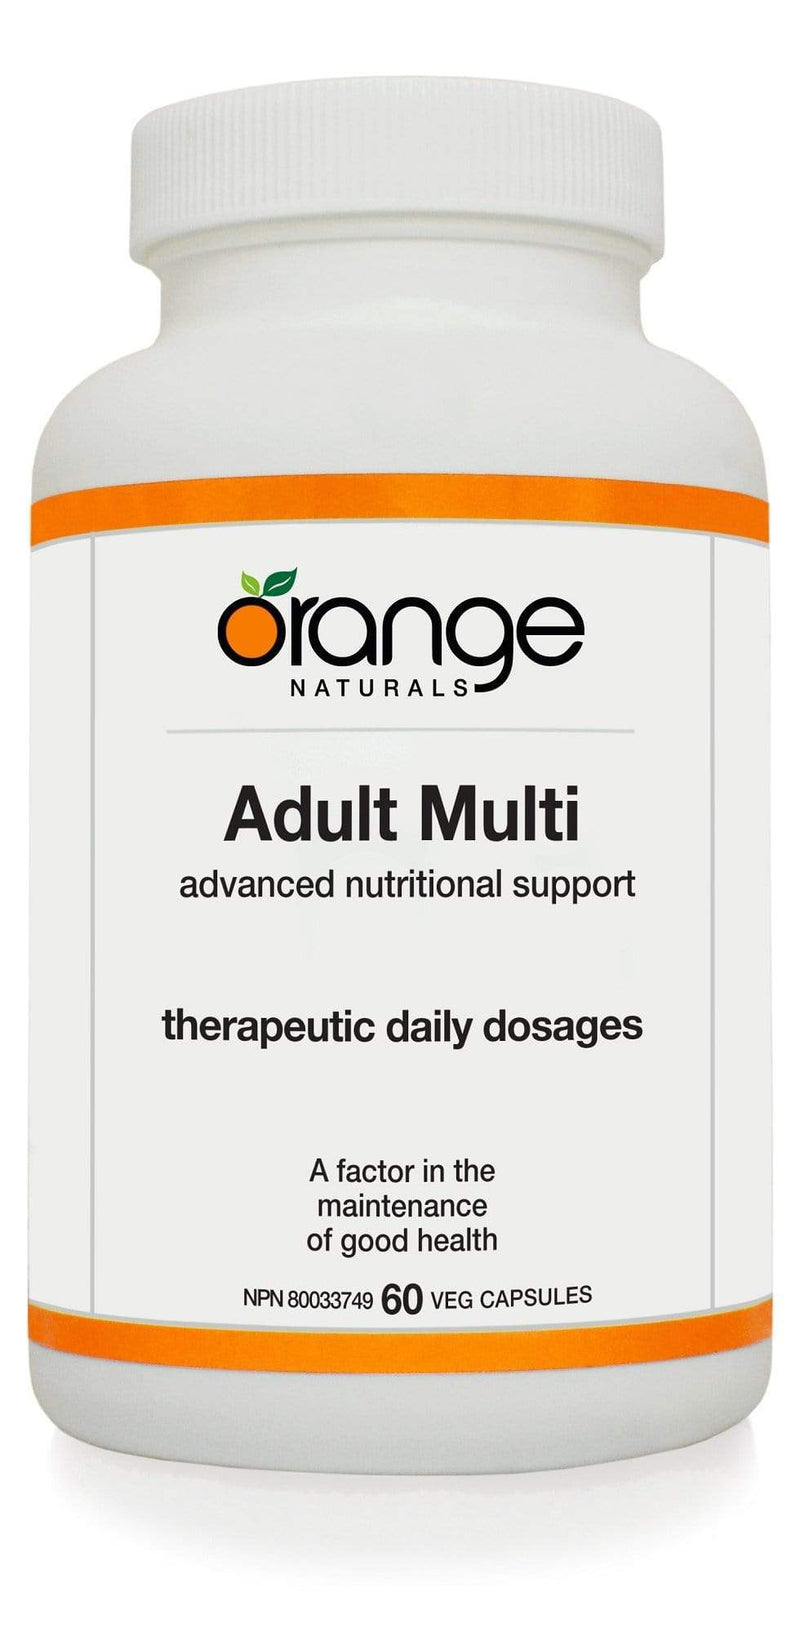 Orange Naturals Adult Multi